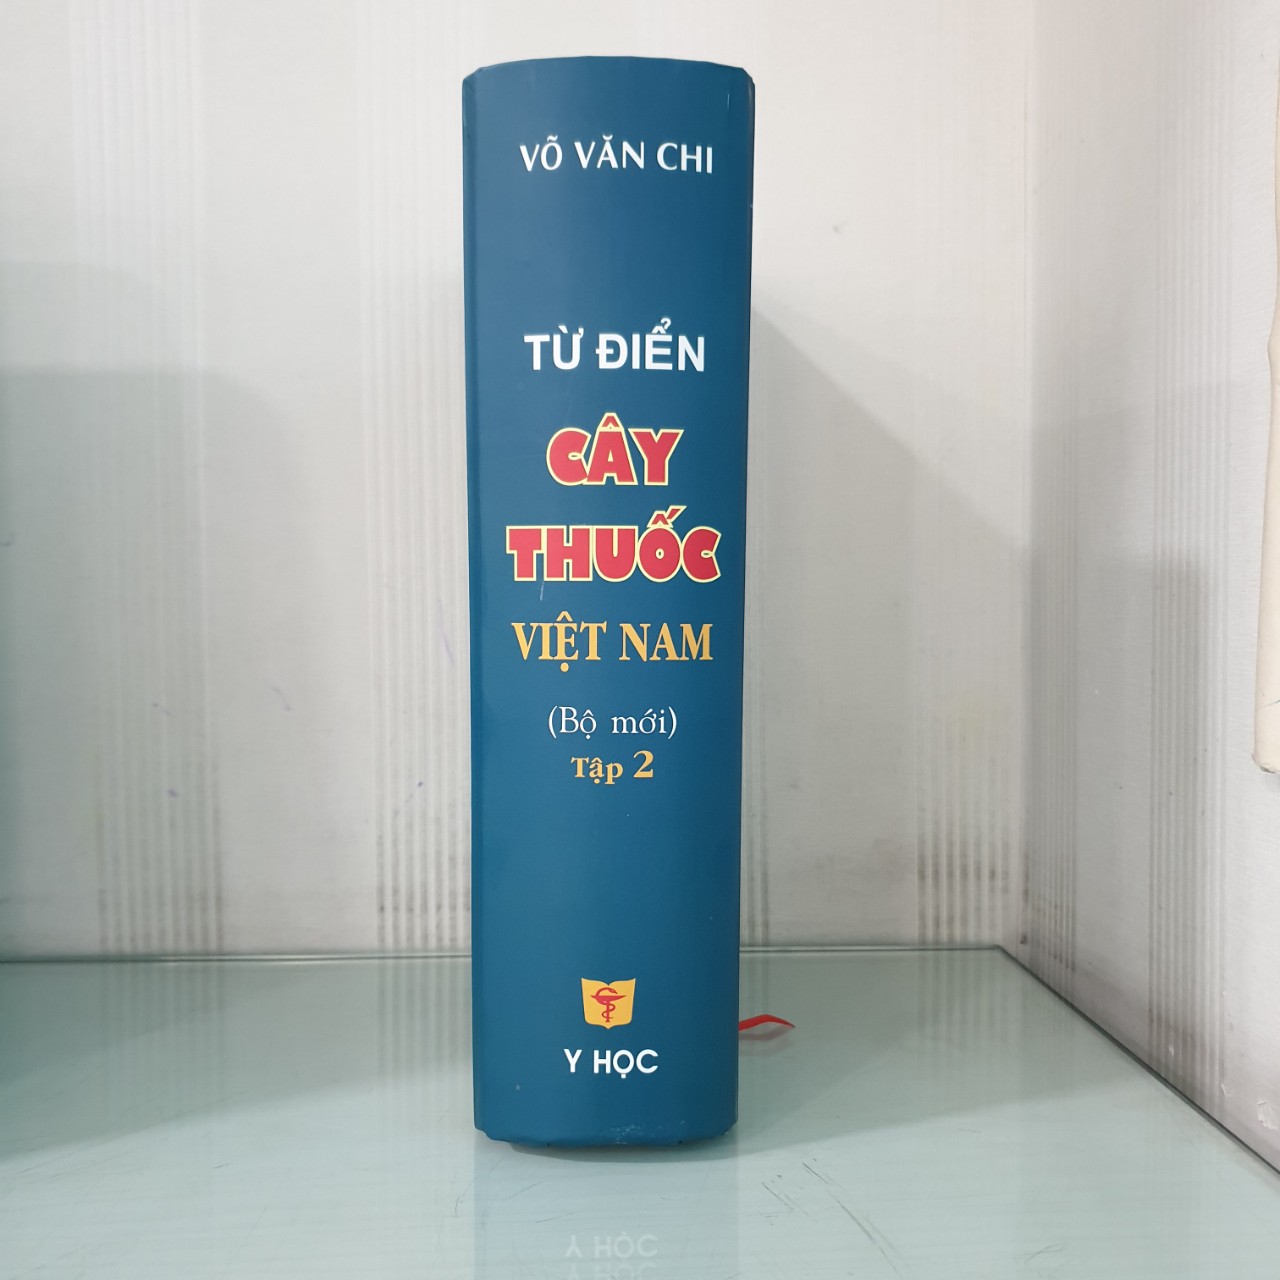 Từ Điển Cây Thuốc Việt Nam (Bộ Mới) Tập 2 - Bìa Cứng